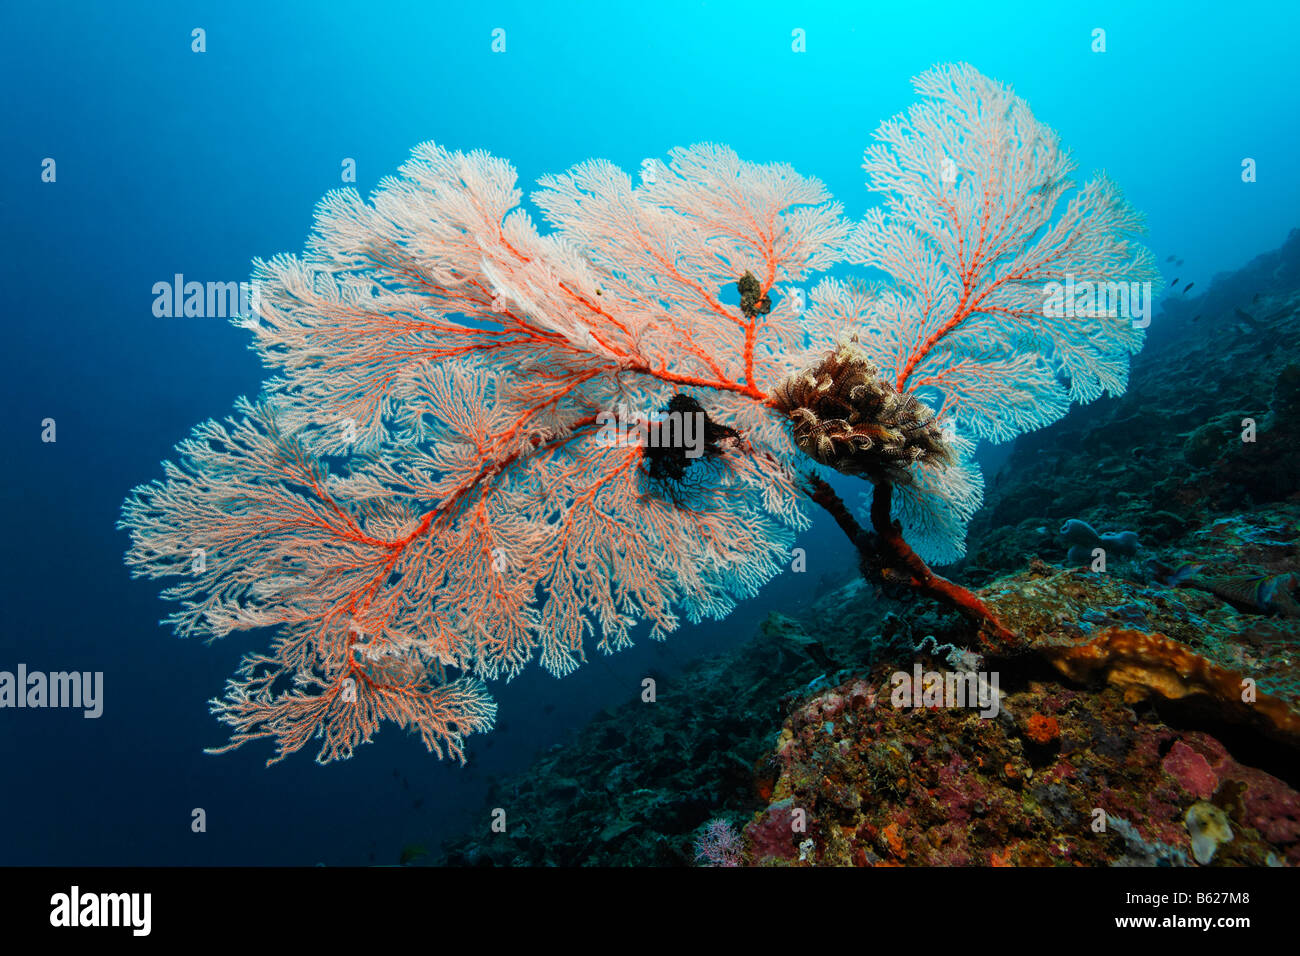 Corallo rosso di ventole in una barriera corallina, avvisatore acustico Coral (Melithea ochracea), Nero Crinoide, giglio di mare o giù-star (Oxycomanthus bennetti) Foto Stock